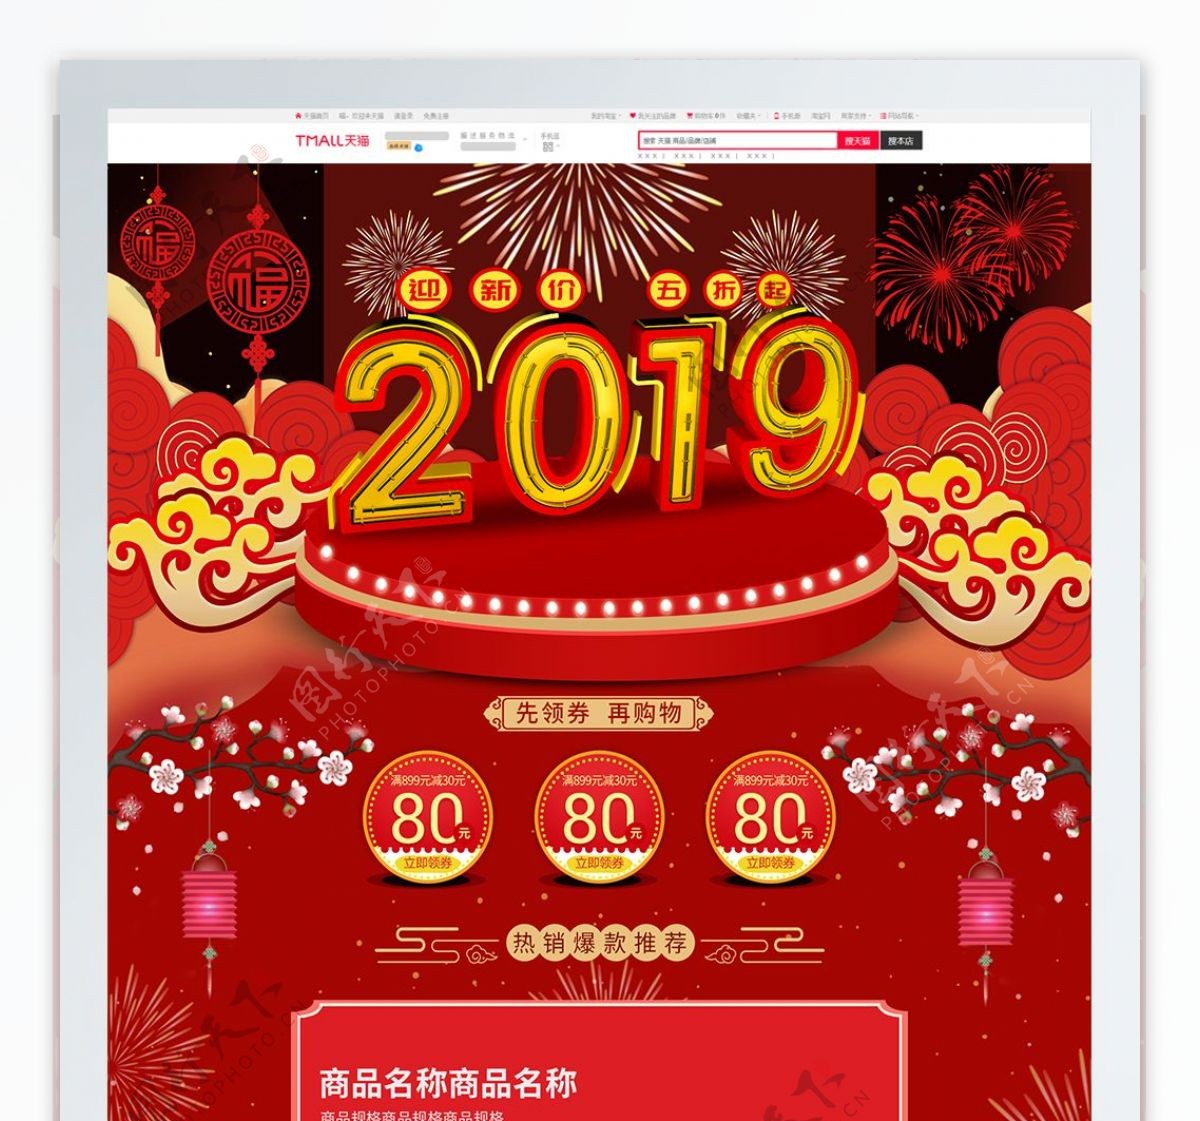 红色喜庆2019新年电商淘宝电器首页模板